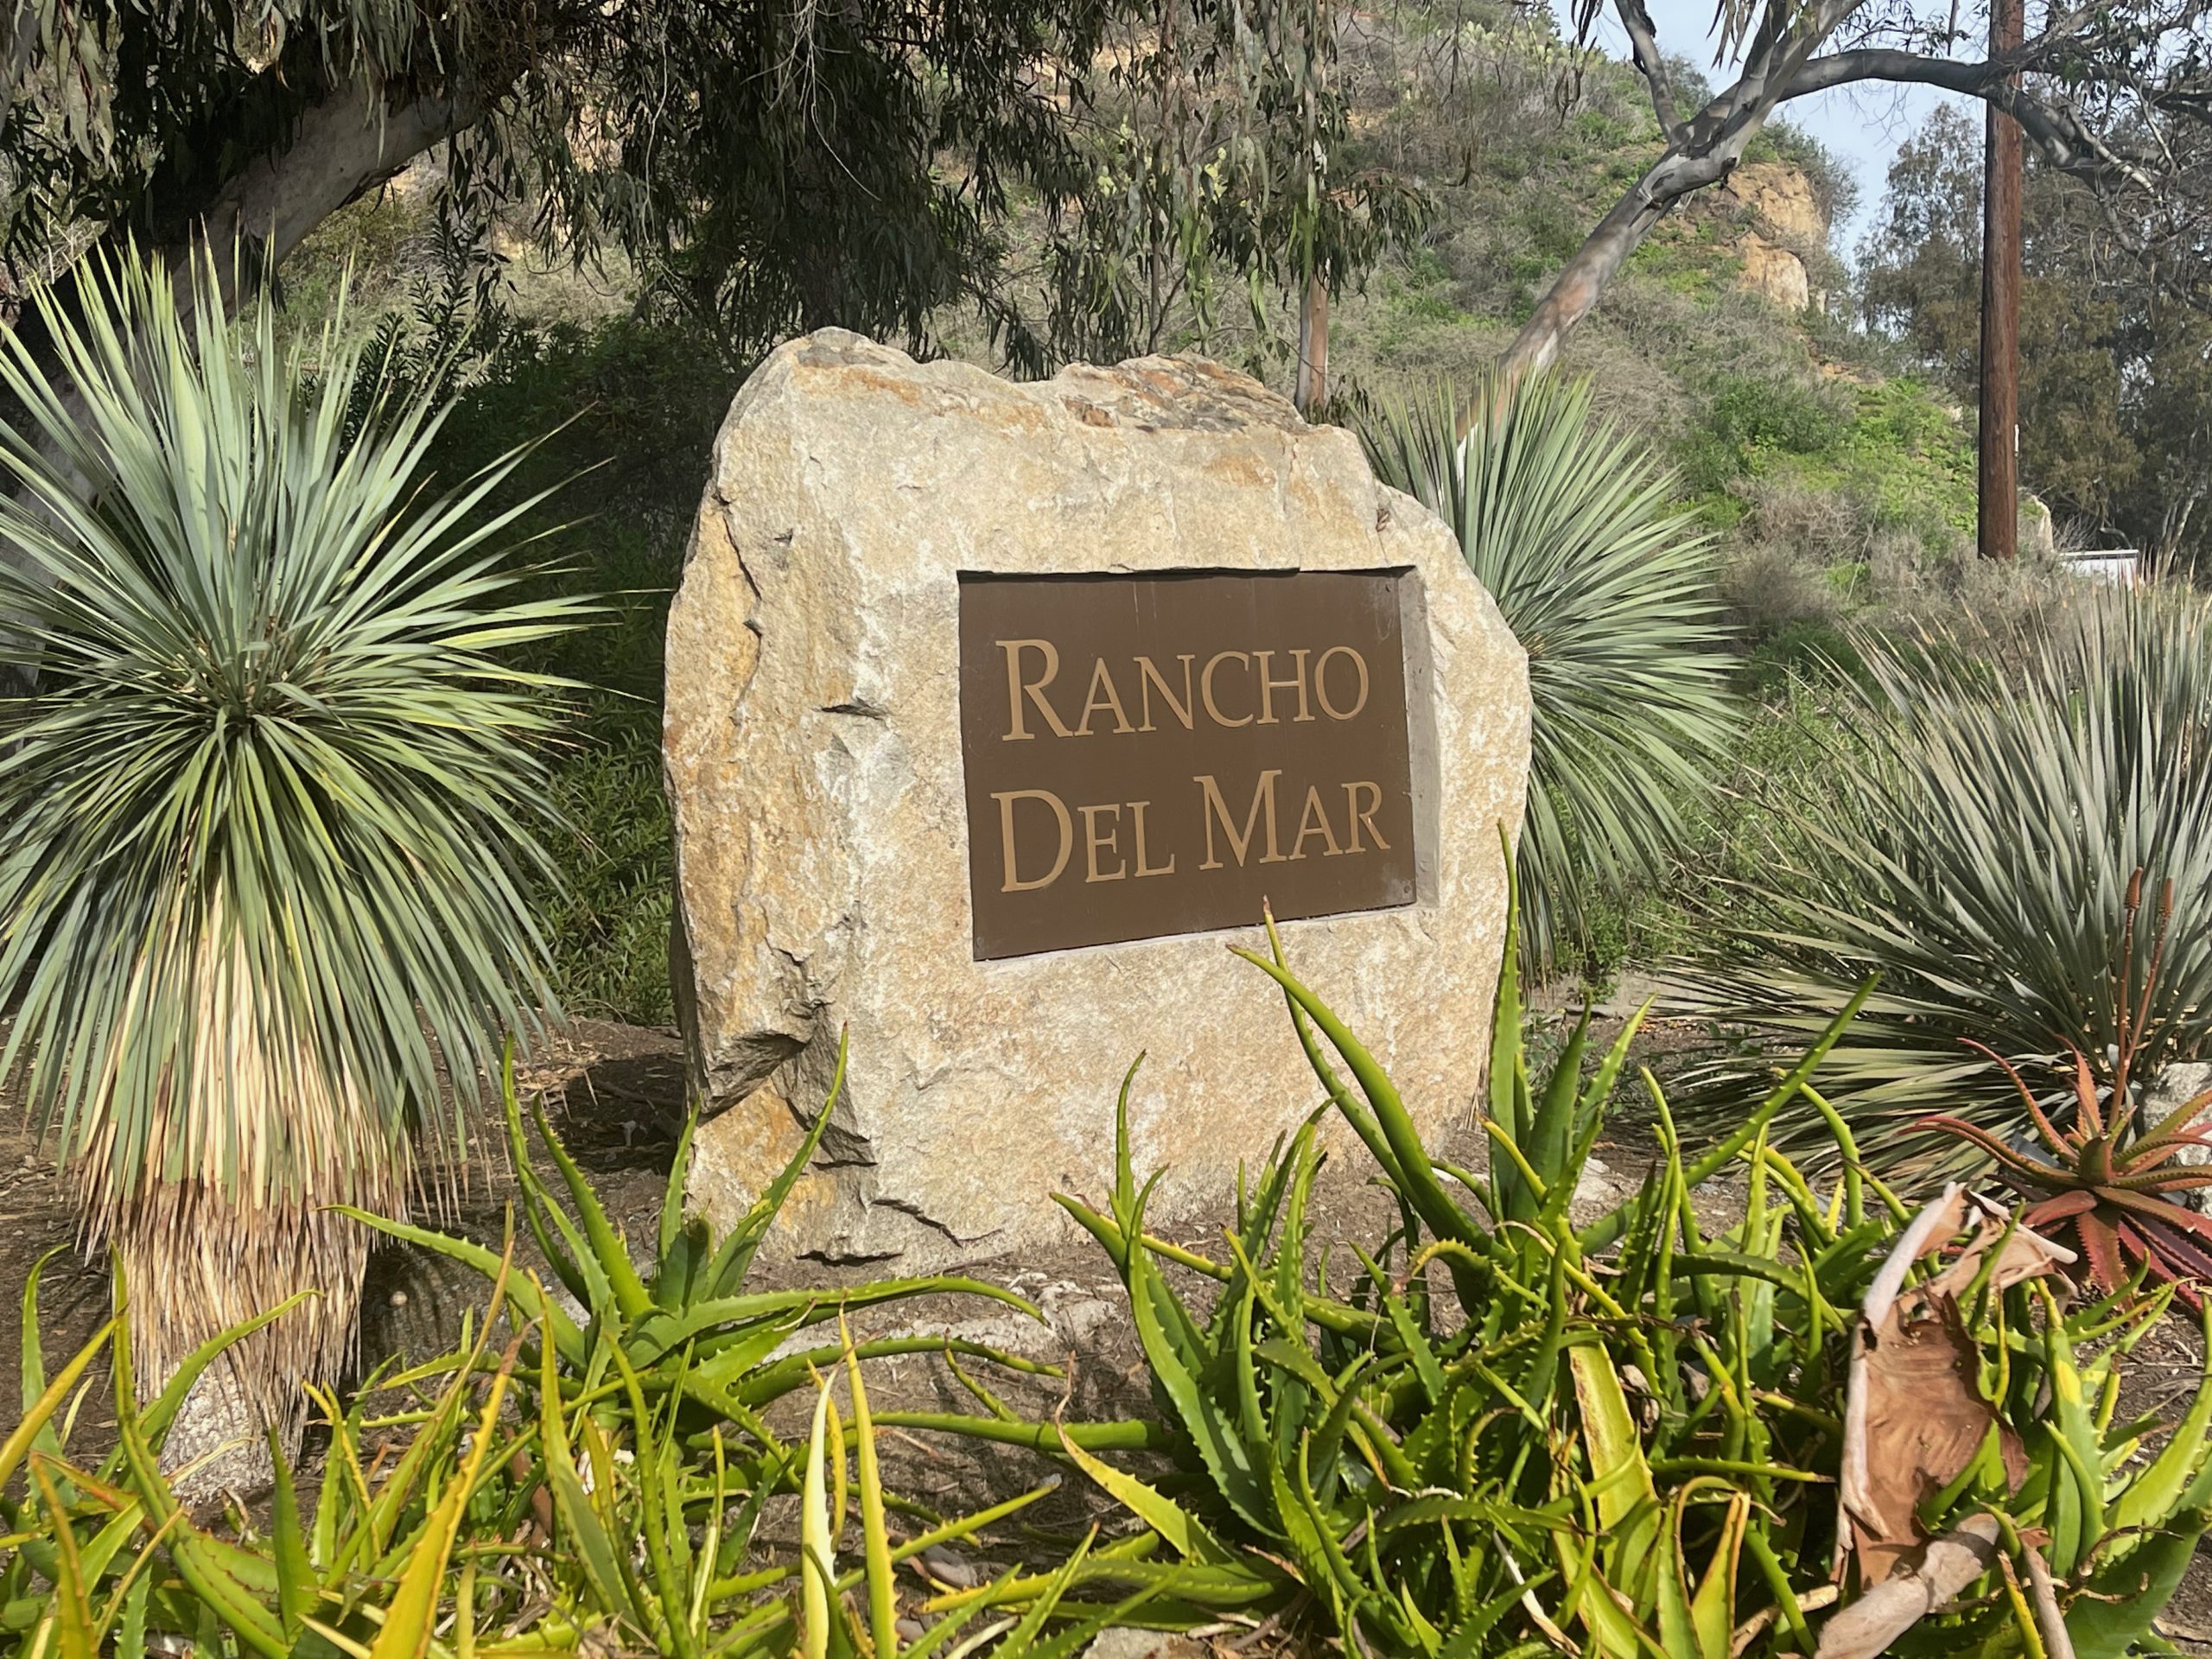 Rancho Del Mar in Del Mar, San Diego, 92104